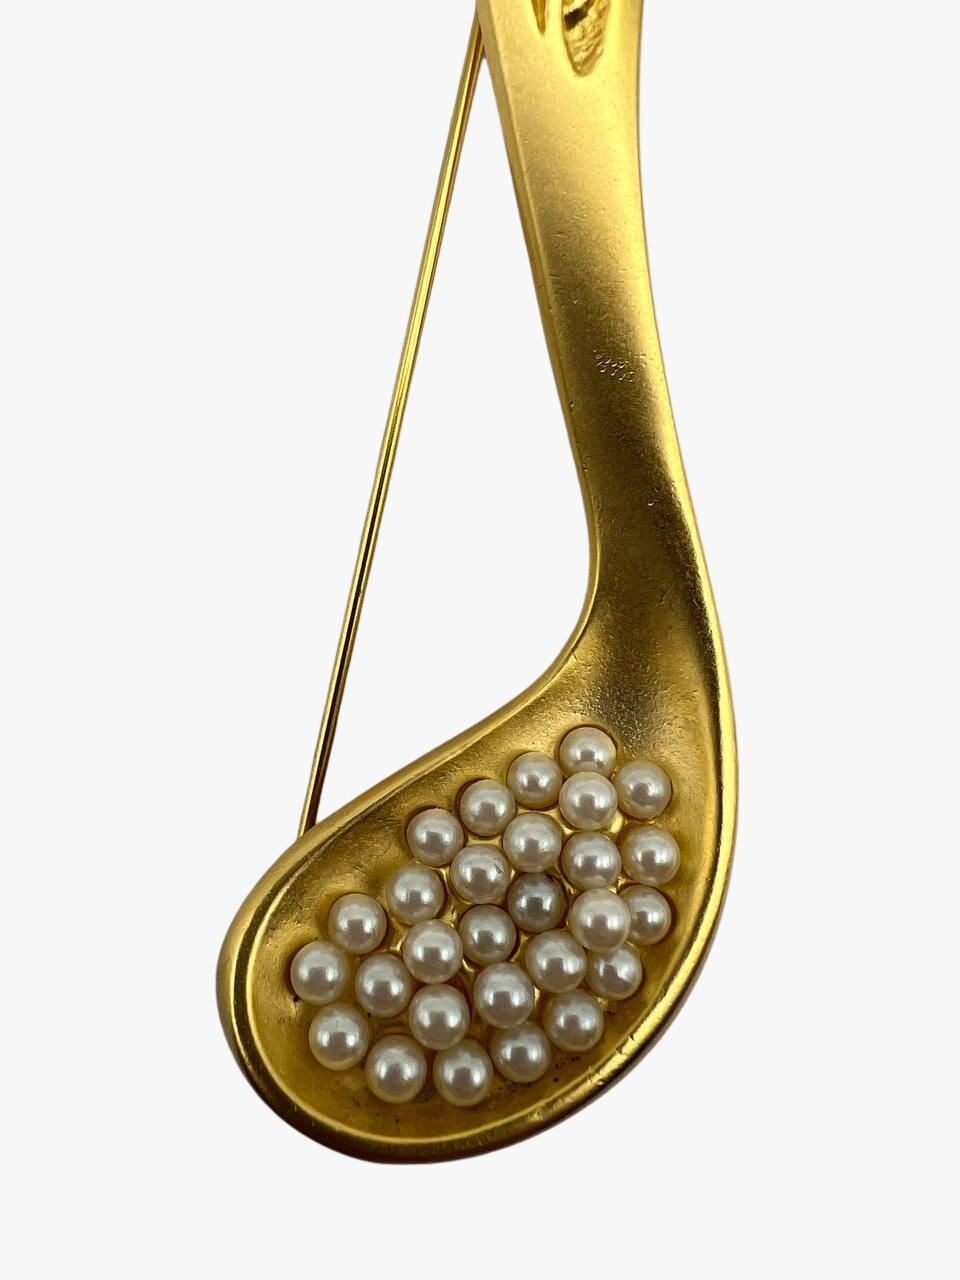 Vintage-Brosche von Karl Lagerfeld mit einem Löffel voller Kaviar aus Kunstperlen, 24 Karat vergoldet. 

Unterschrieben. KL-Monogramme. 

Jahr: 1992er

Zustand: ausgezeichnet. Keine sichtbaren Anzeichen von Verschleiß. 

Größe: 12